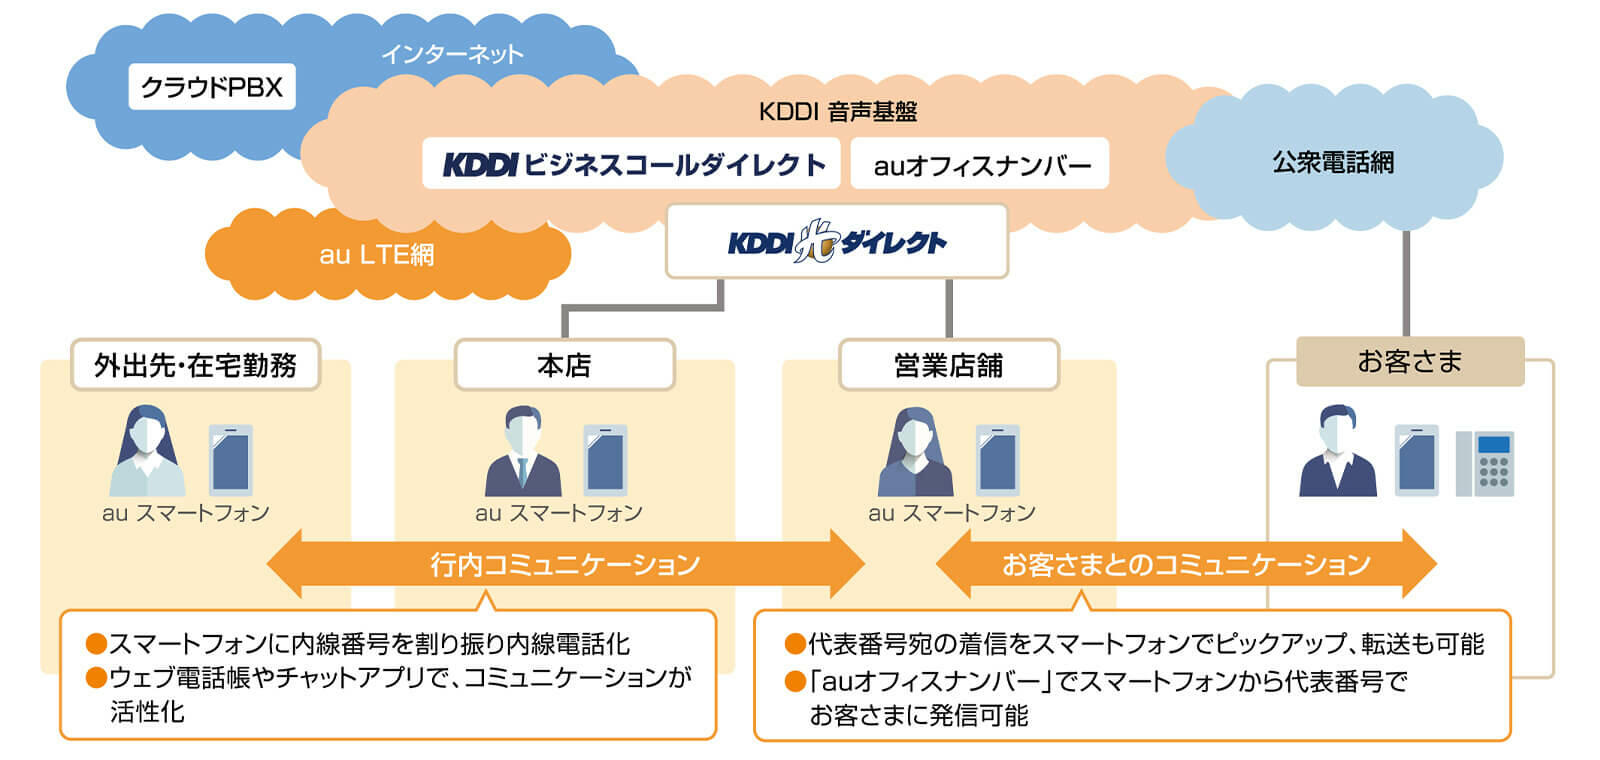 北日本銀行様のコミュニケーション環境の概要